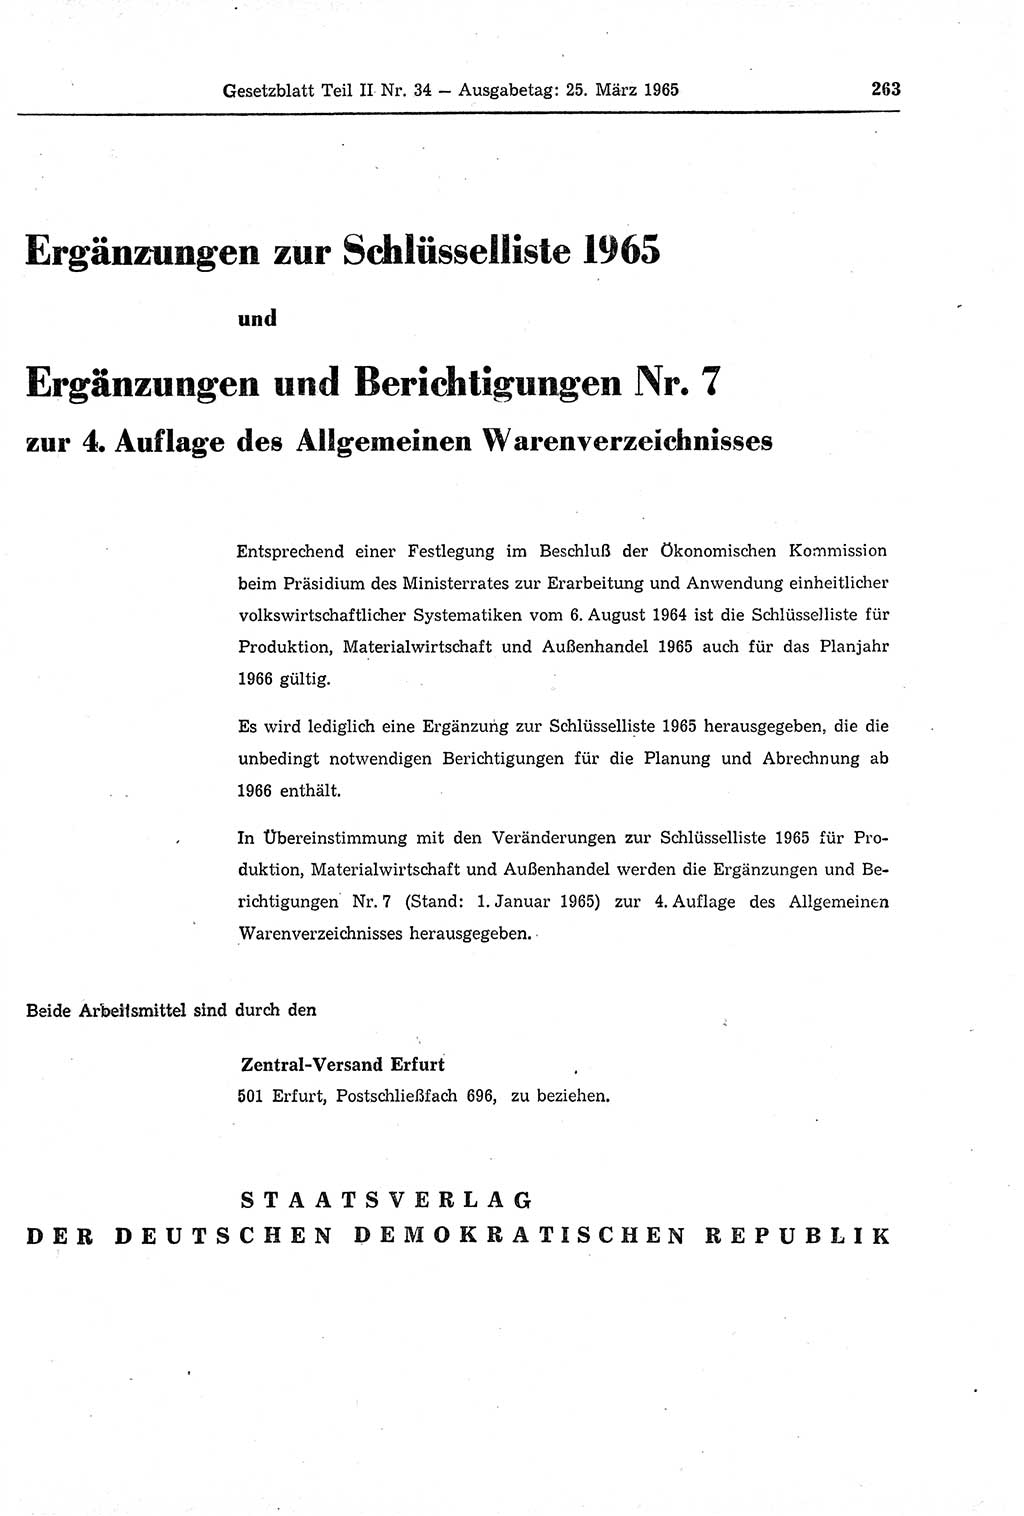 Gesetzblatt (GBl.) der Deutschen Demokratischen Republik (DDR) Teil ⅠⅠ 1965, Seite 263 (GBl. DDR ⅠⅠ 1965, S. 263)